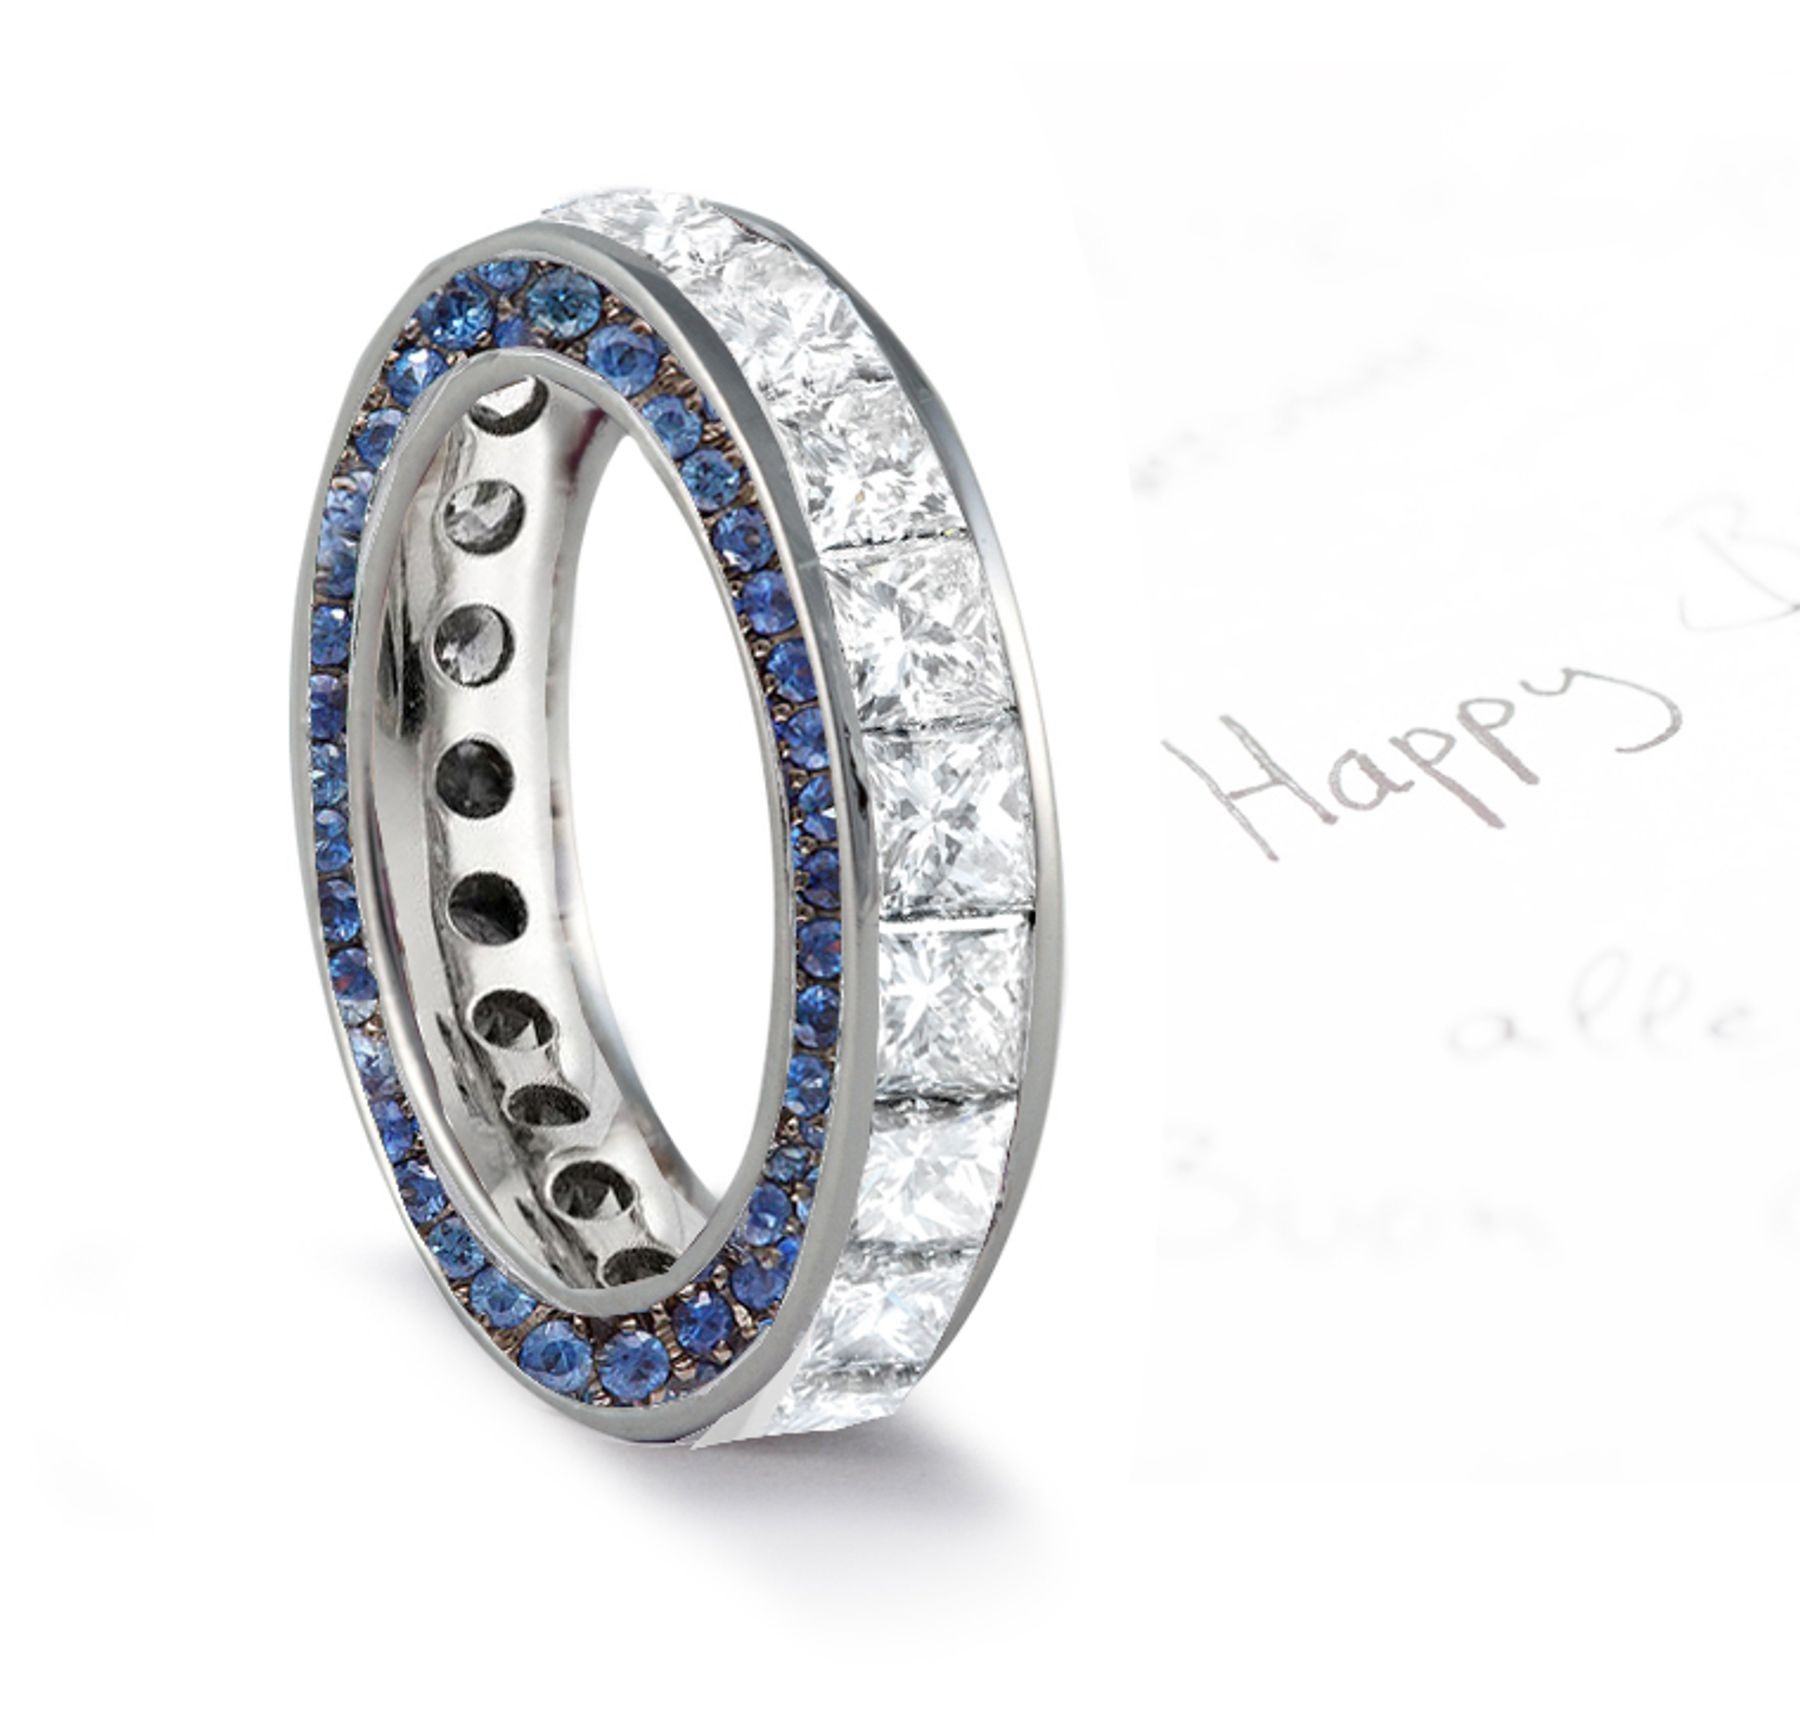 Micro pave Halo Round & Princess Cut Diamond & Blue Sapphire Eternity Rings